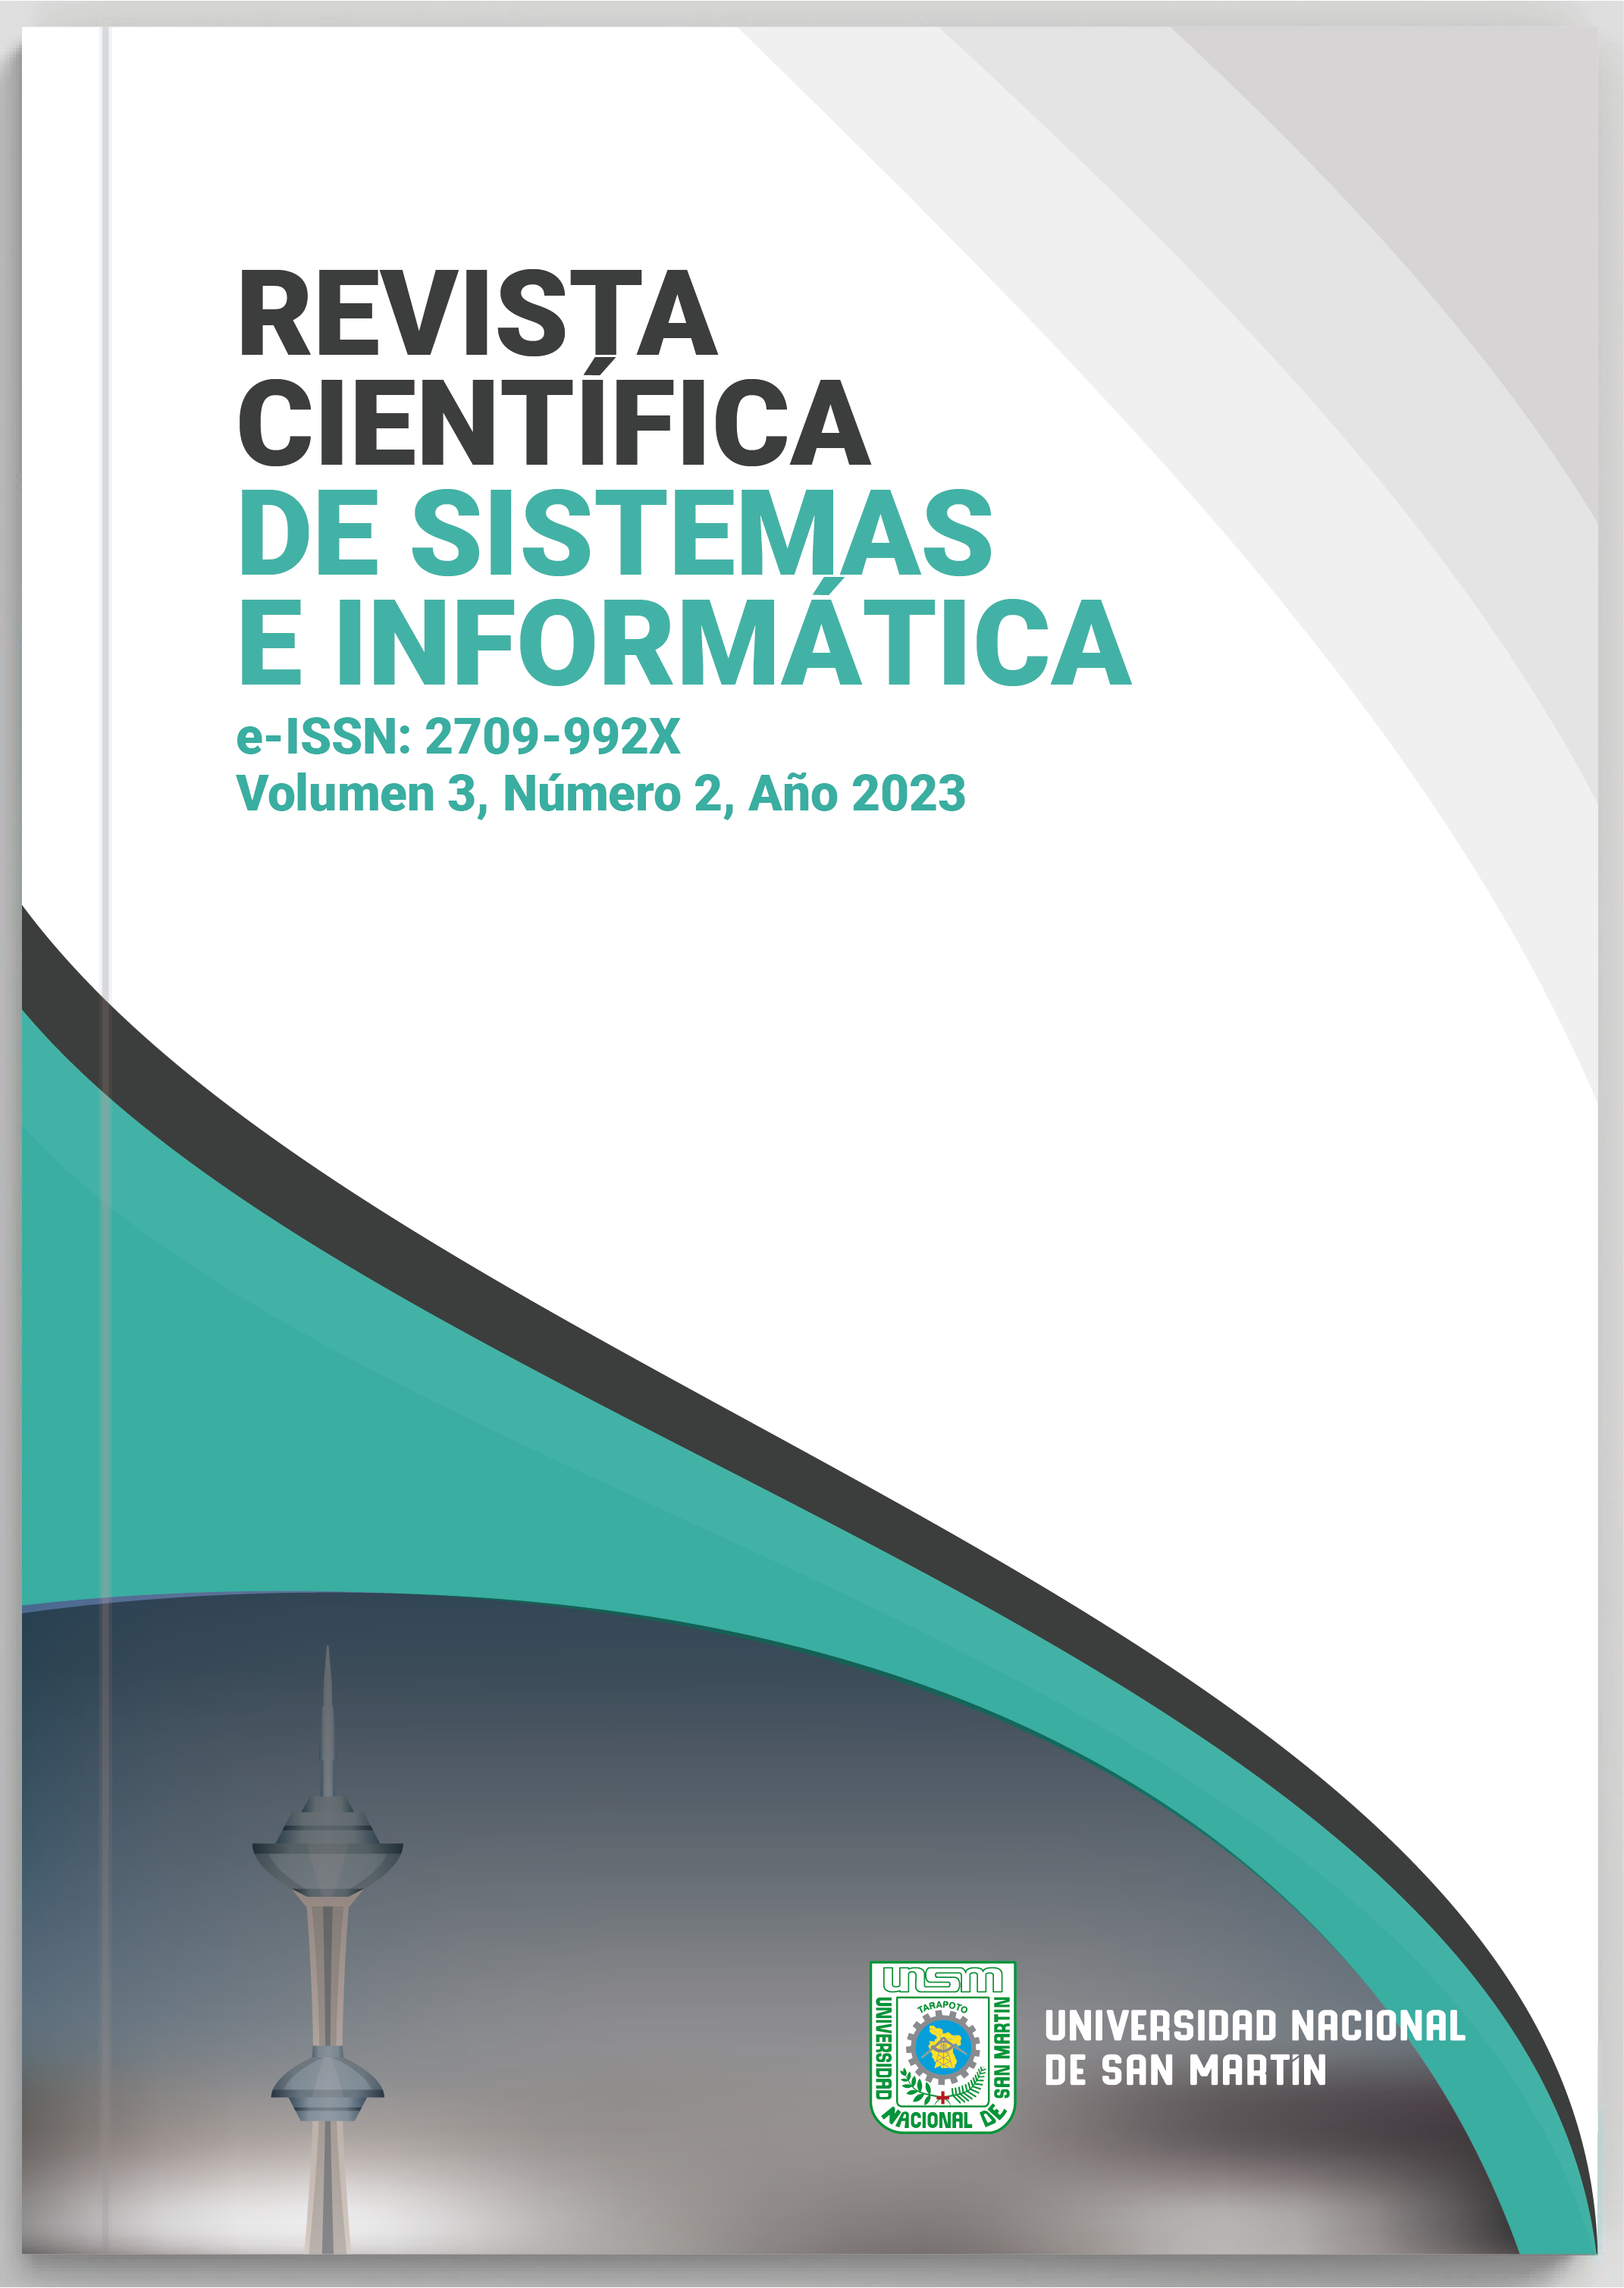 					View Vol. 3 No. 2 (2023): Revista Científica de Sistemas e Informática
				